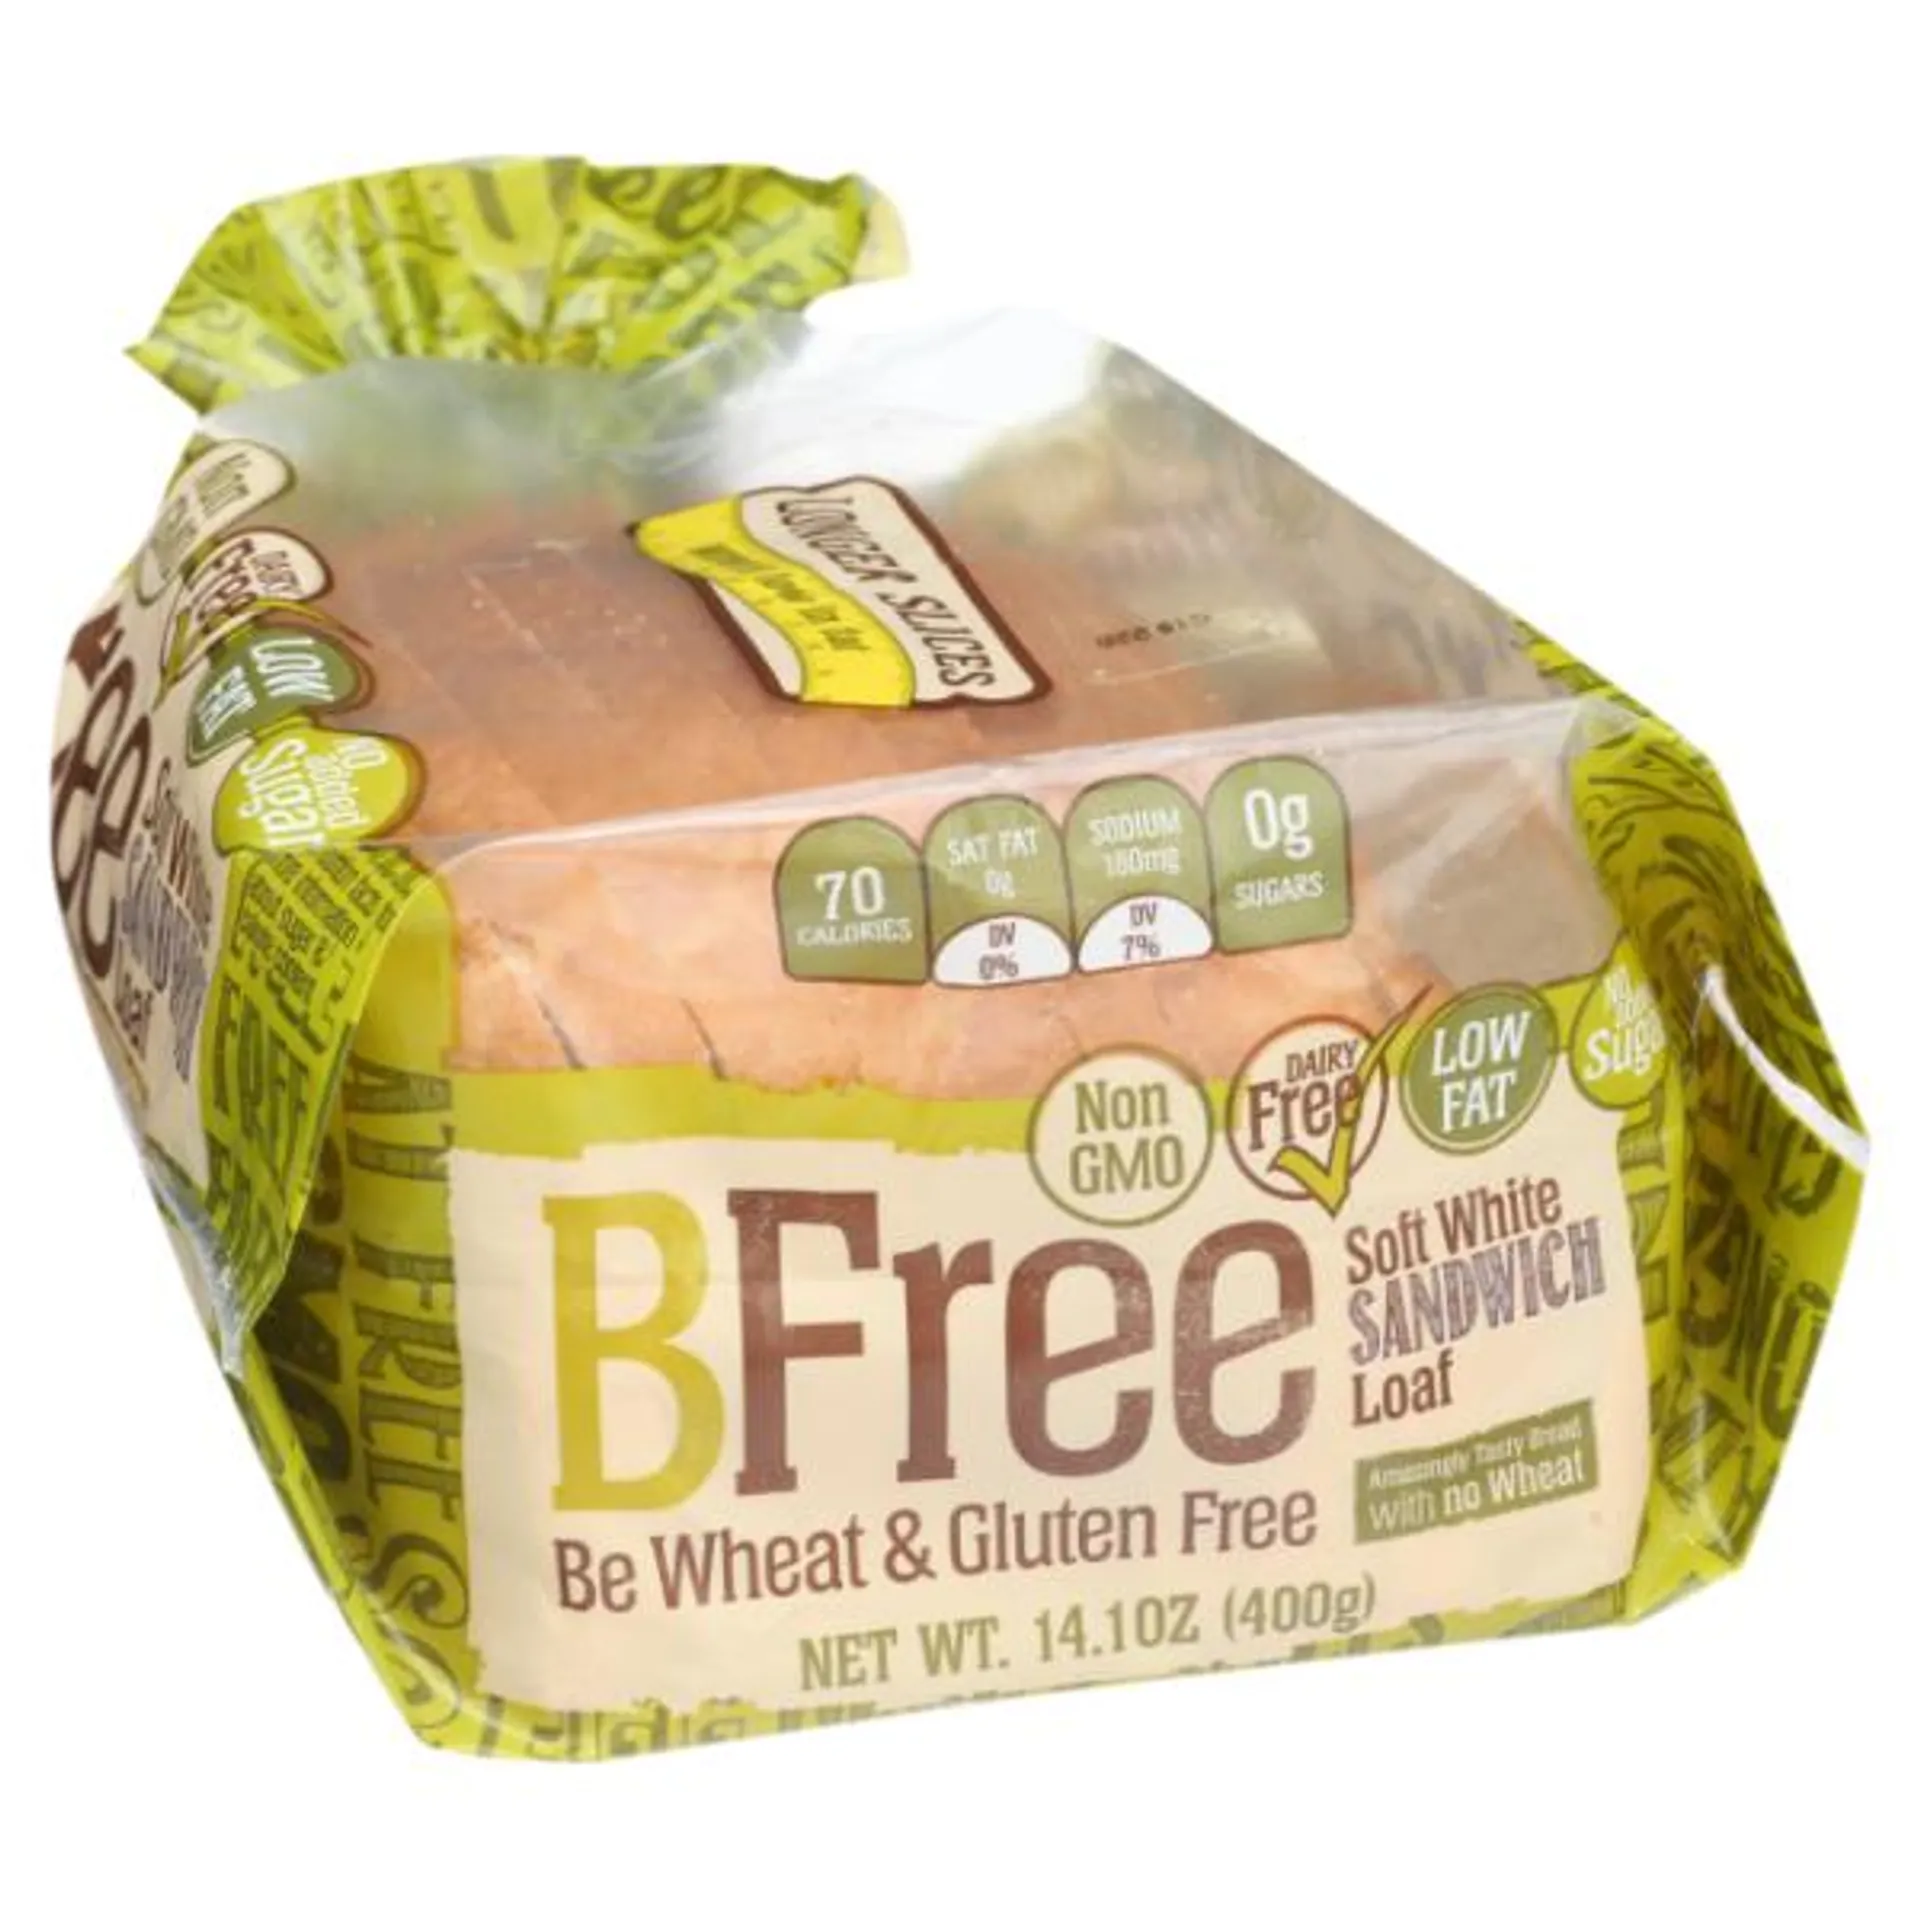 Bfree Gluten Free Soft White Sandwich Bread - 14.11 Ounce